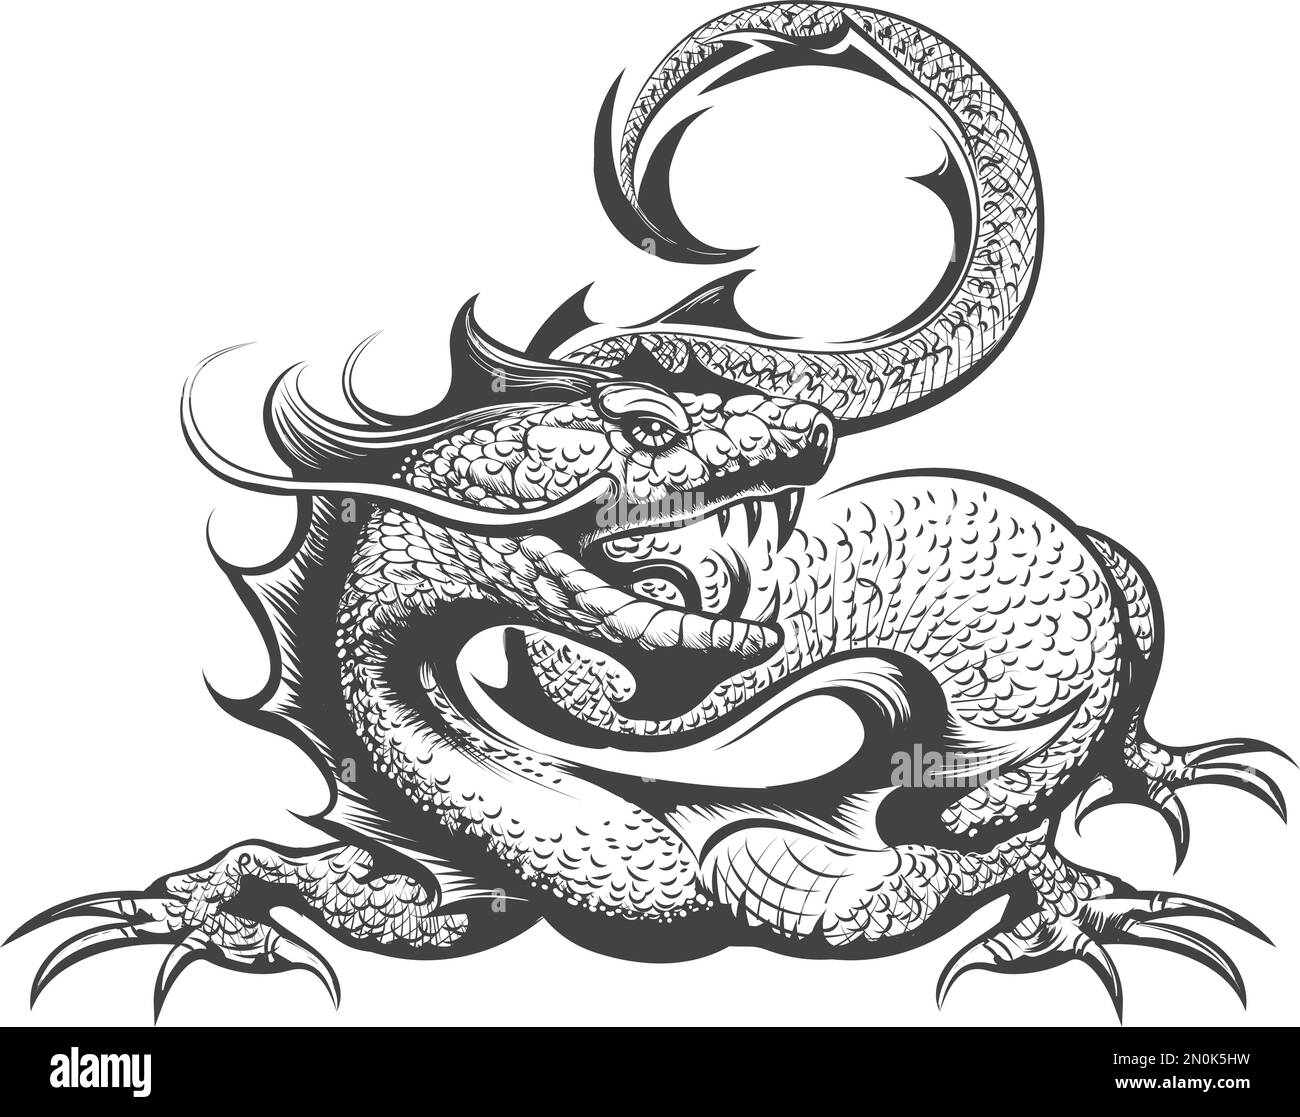 Tatouage de Dragon dessiné en style gravure isolé sur fond blanc. Illustration vectorielle Illustration de Vecteur